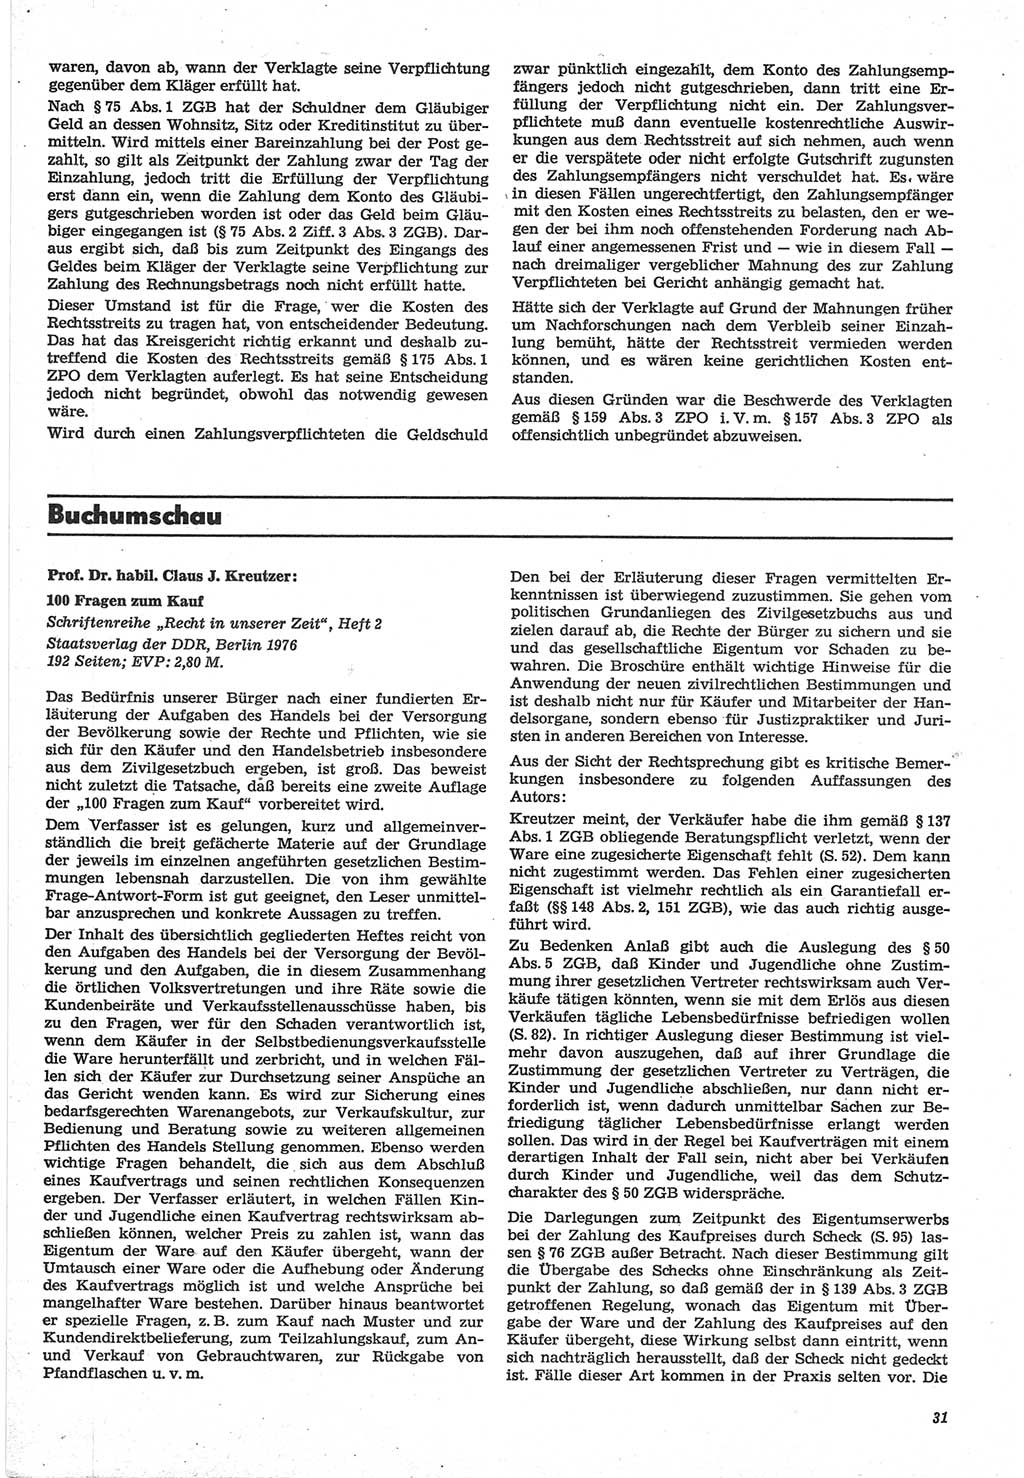 Neue Justiz (NJ), Zeitschrift für Recht und Rechtswissenschaft-Zeitschrift, sozialistisches Recht und Gesetzlichkeit, 31. Jahrgang 1977, Seite 31 (NJ DDR 1977, S. 31)